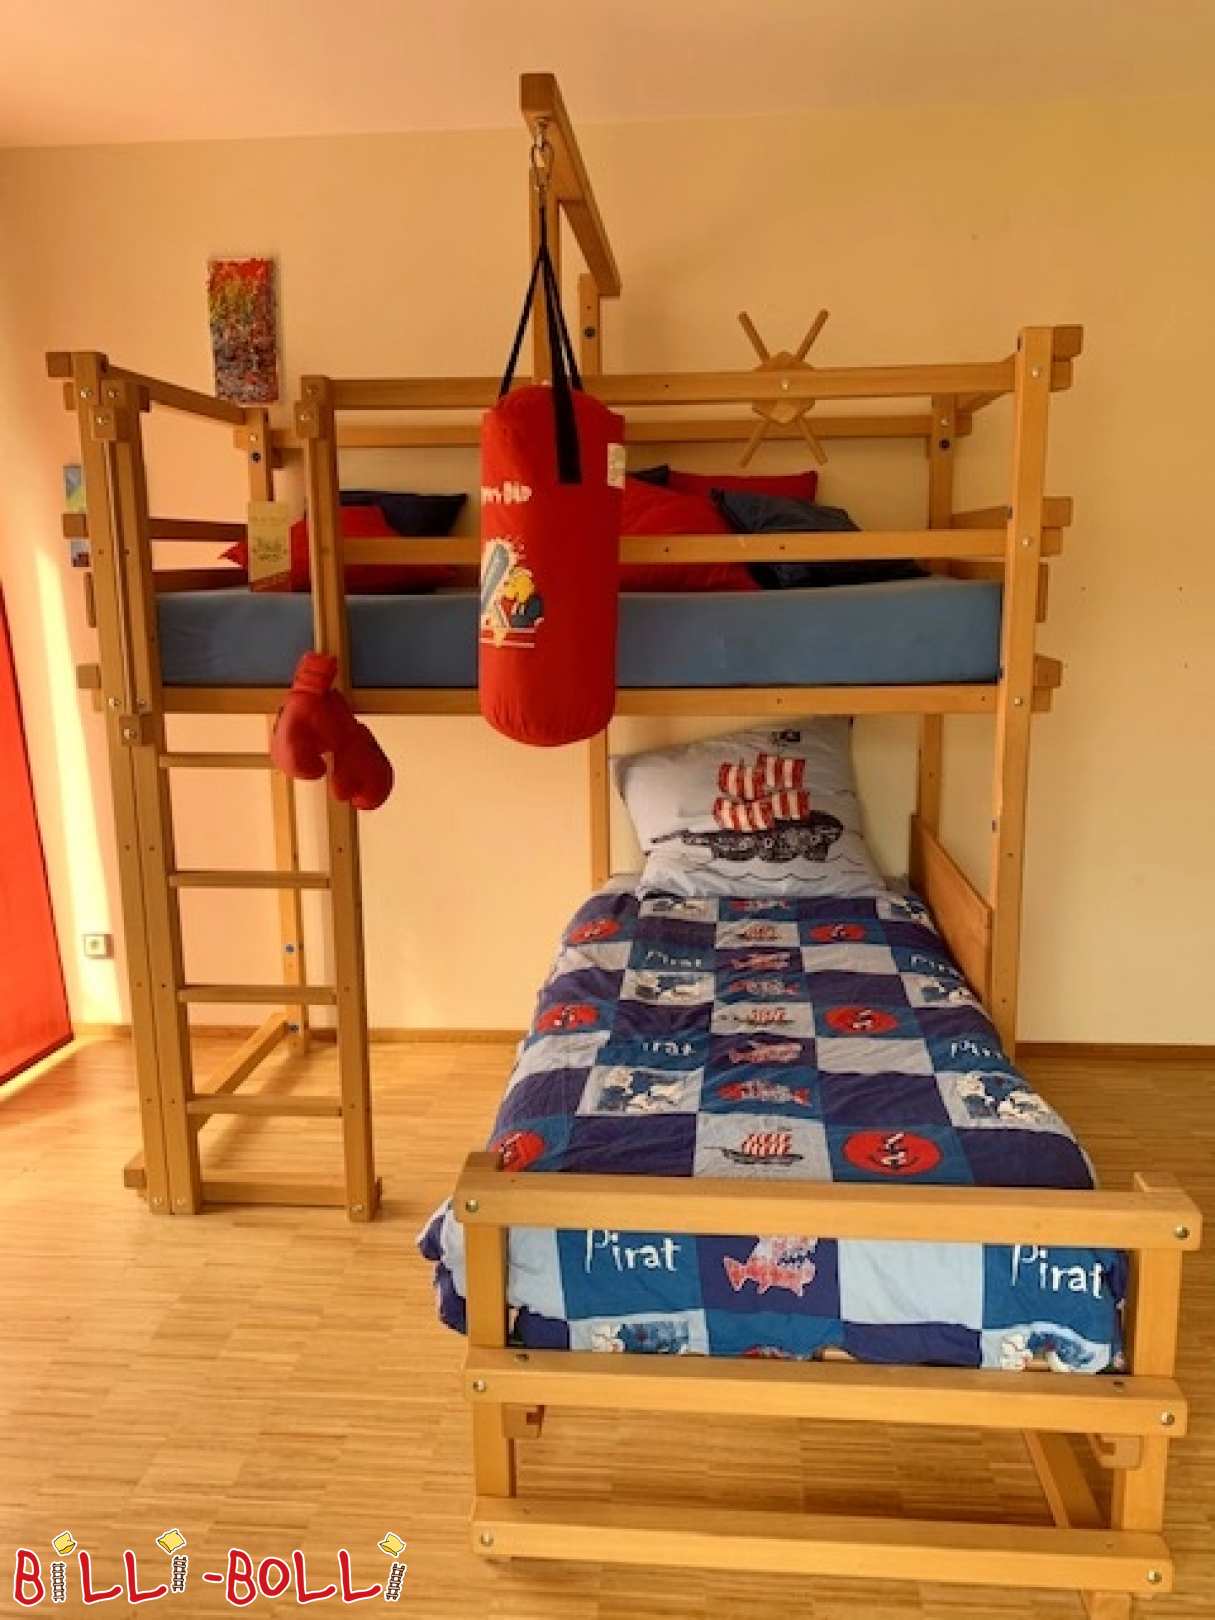 Krevet na kat iznad ugla od bukve (Kategorija: Korišten krevet u potkrovlju)